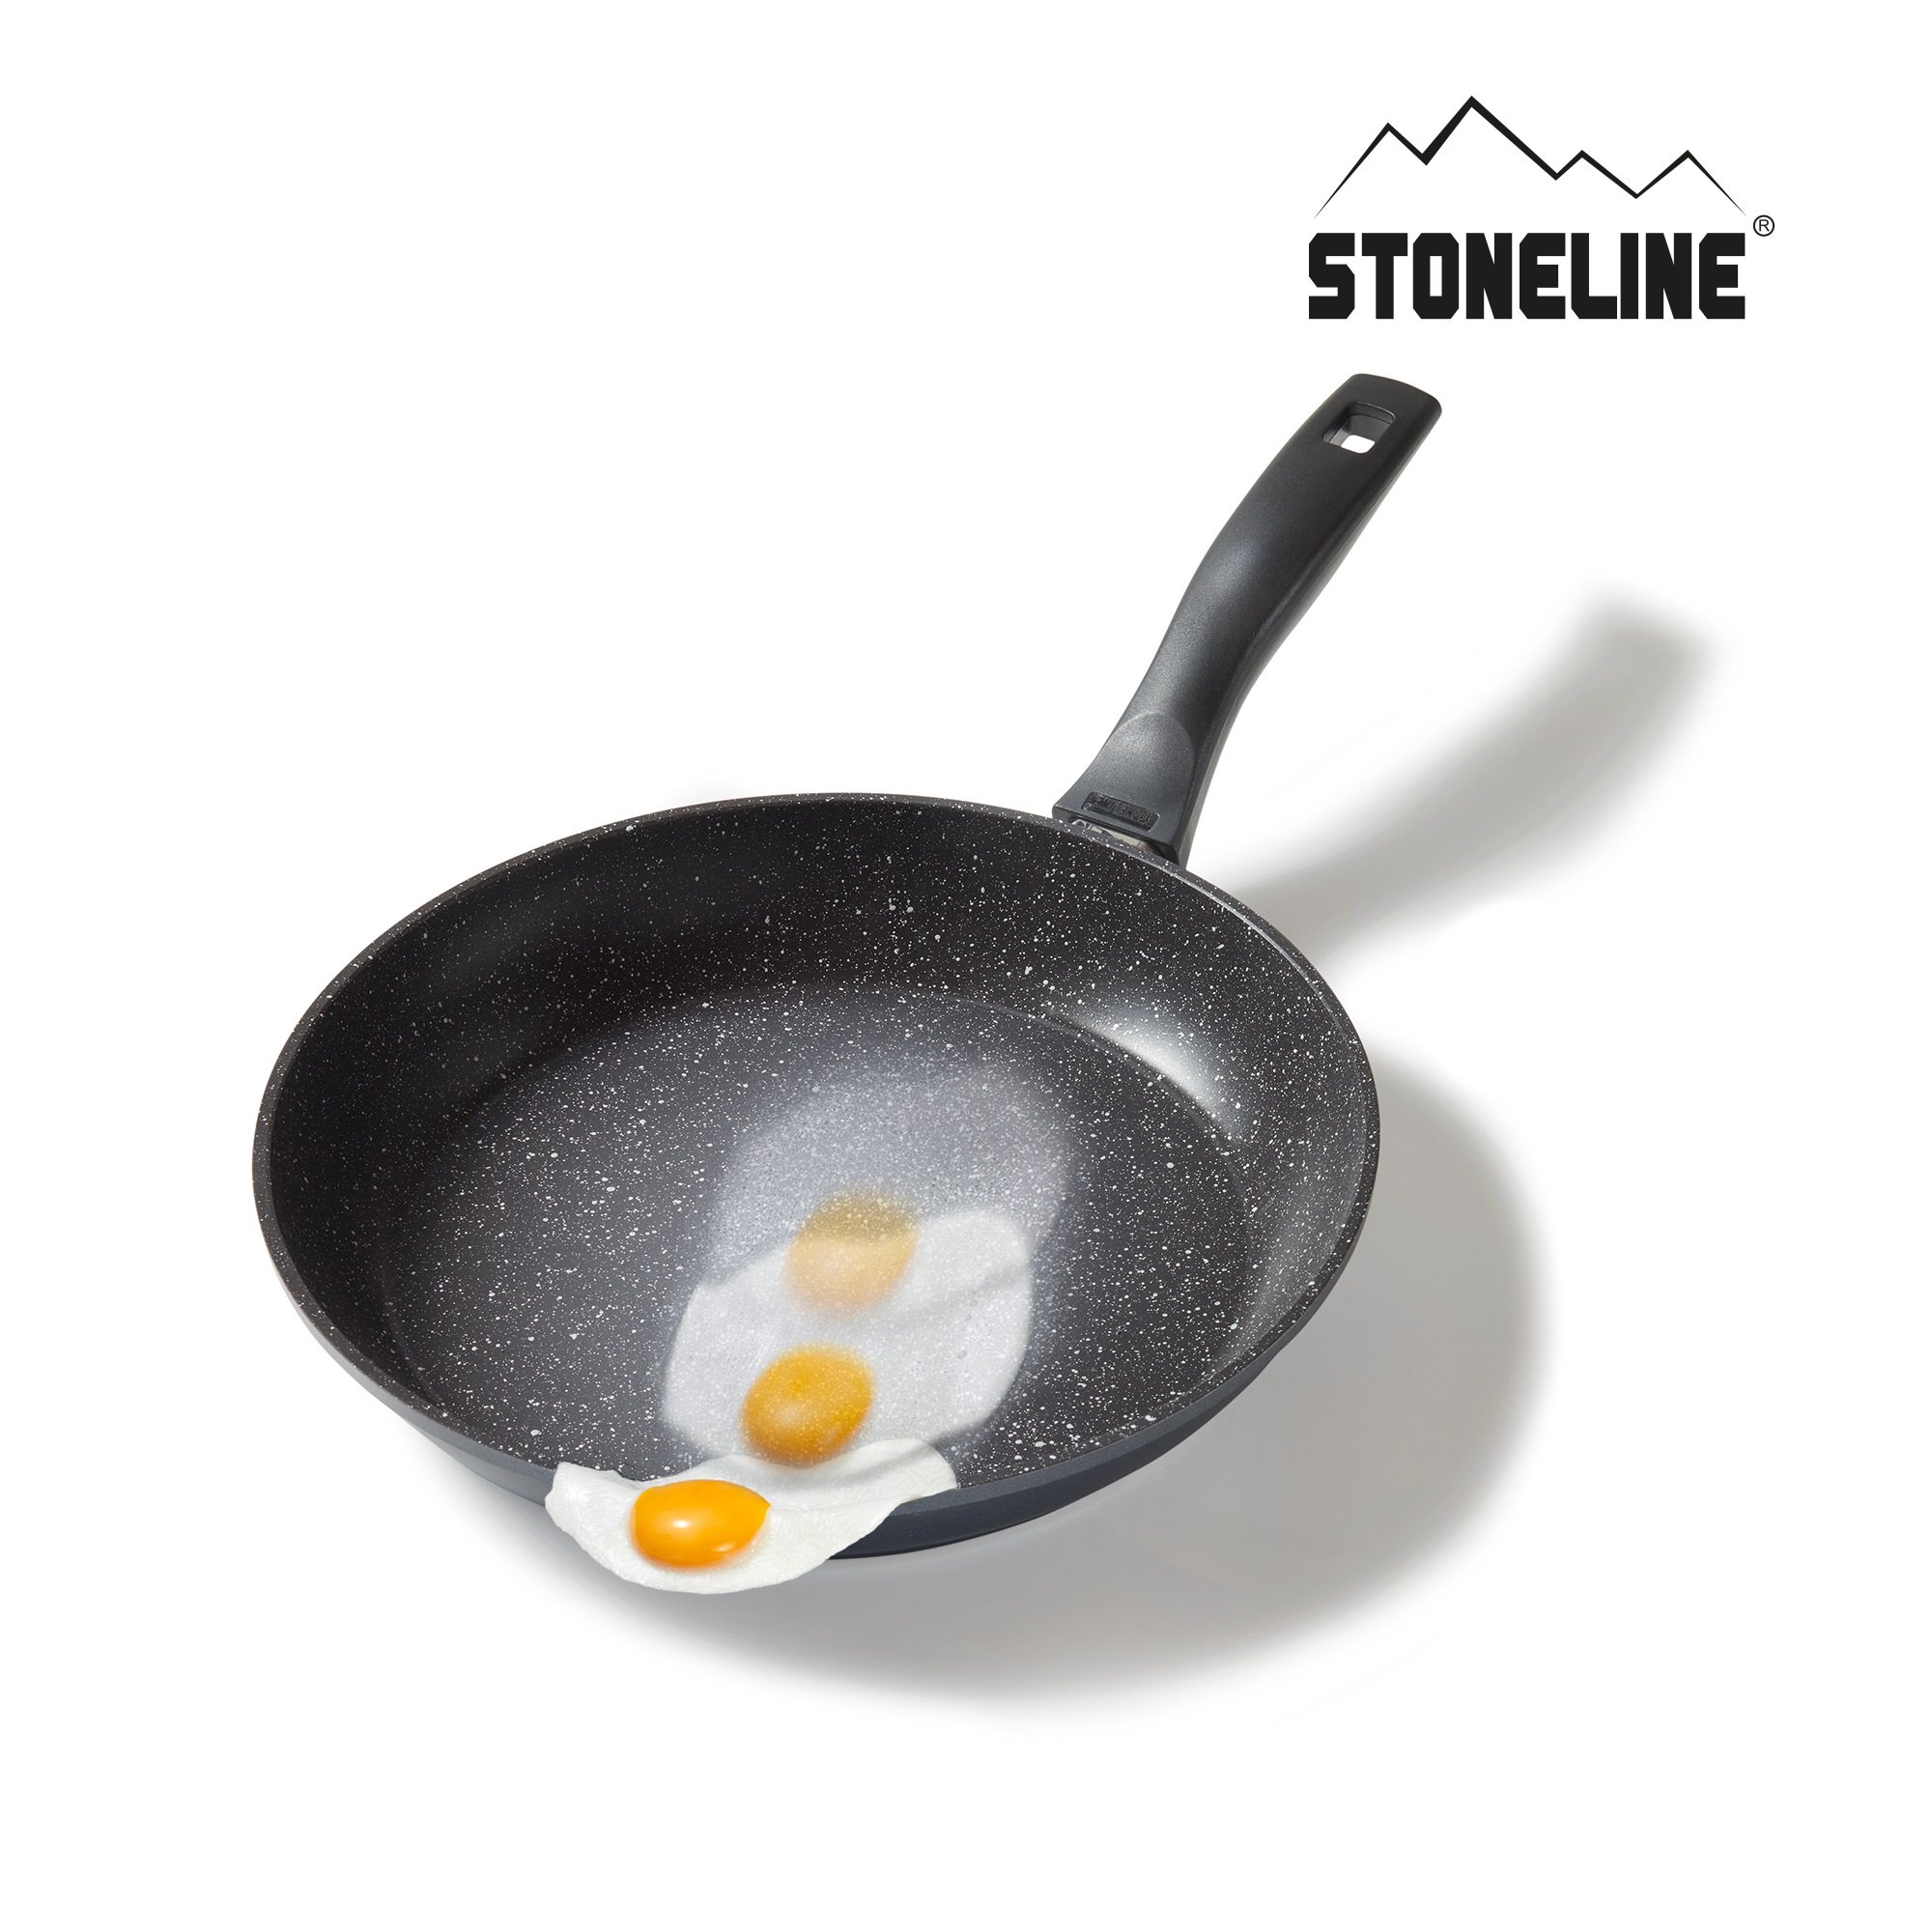 STONELINE® Kochgeschirr-Set 8-teilig mit Deckeln, beschichtete Töpfe & Pfannen Induktion geeignet